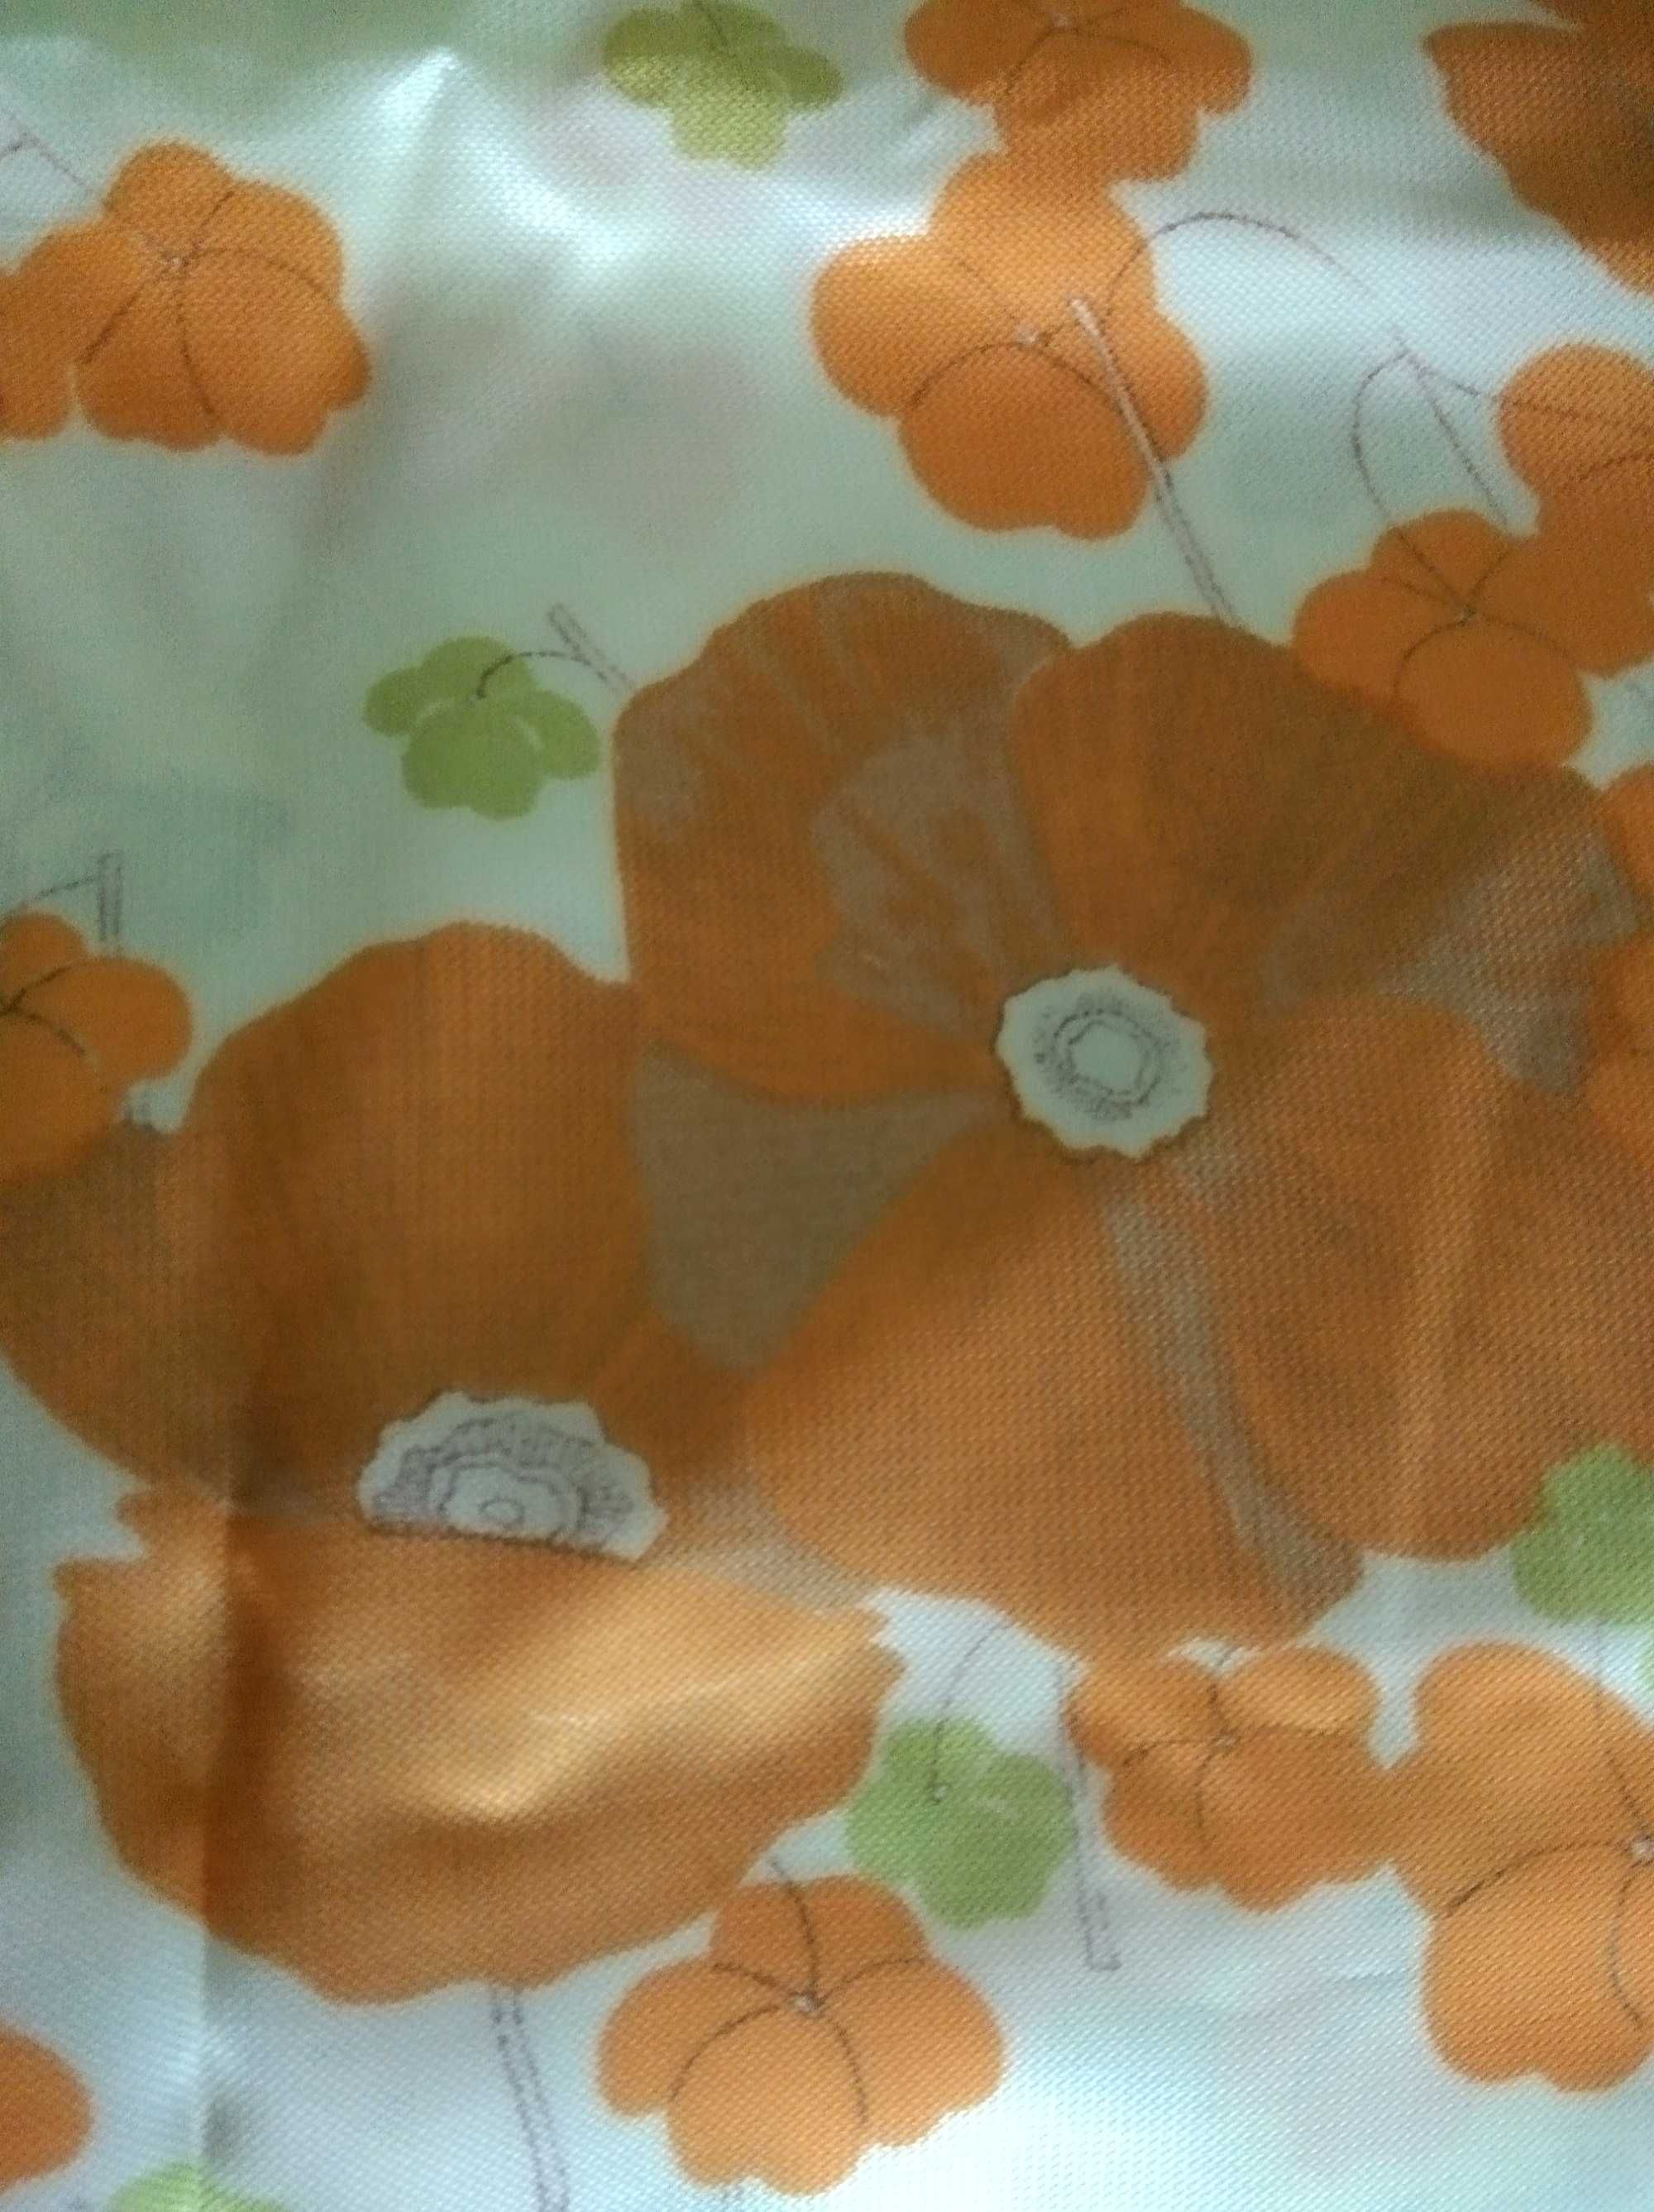 Ткань искуственный шелк с маками оранжевыми времен ссср раритет винтаж